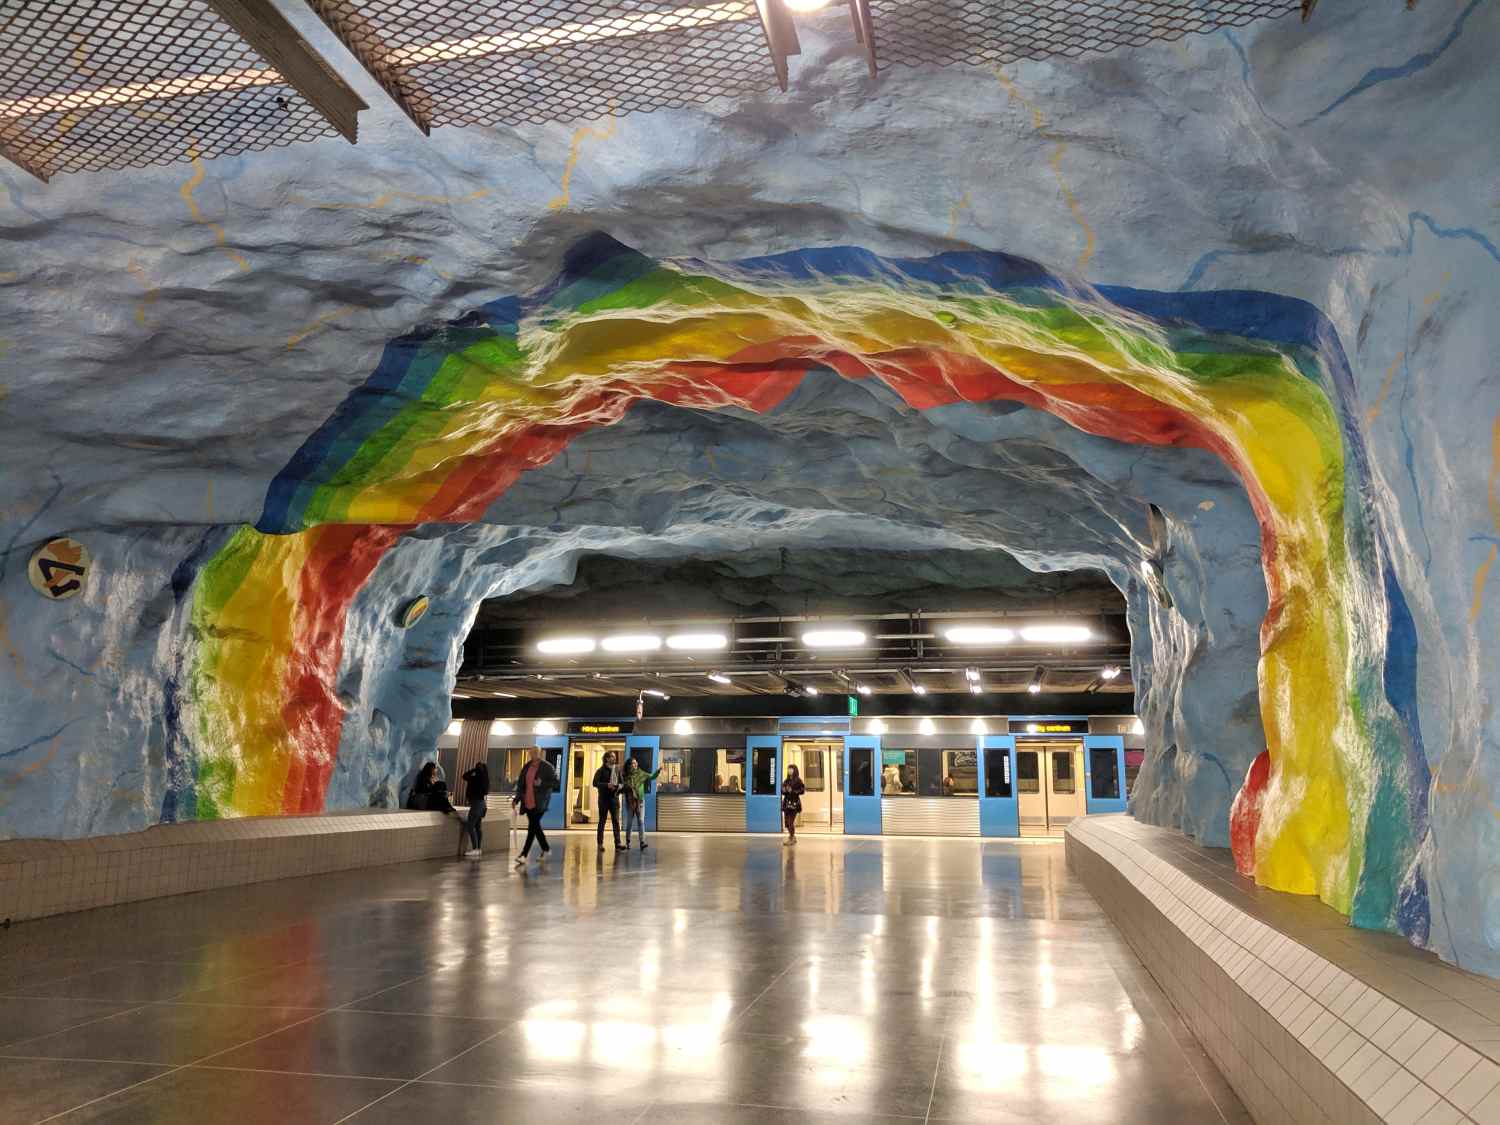 Stockholm podzemna subway